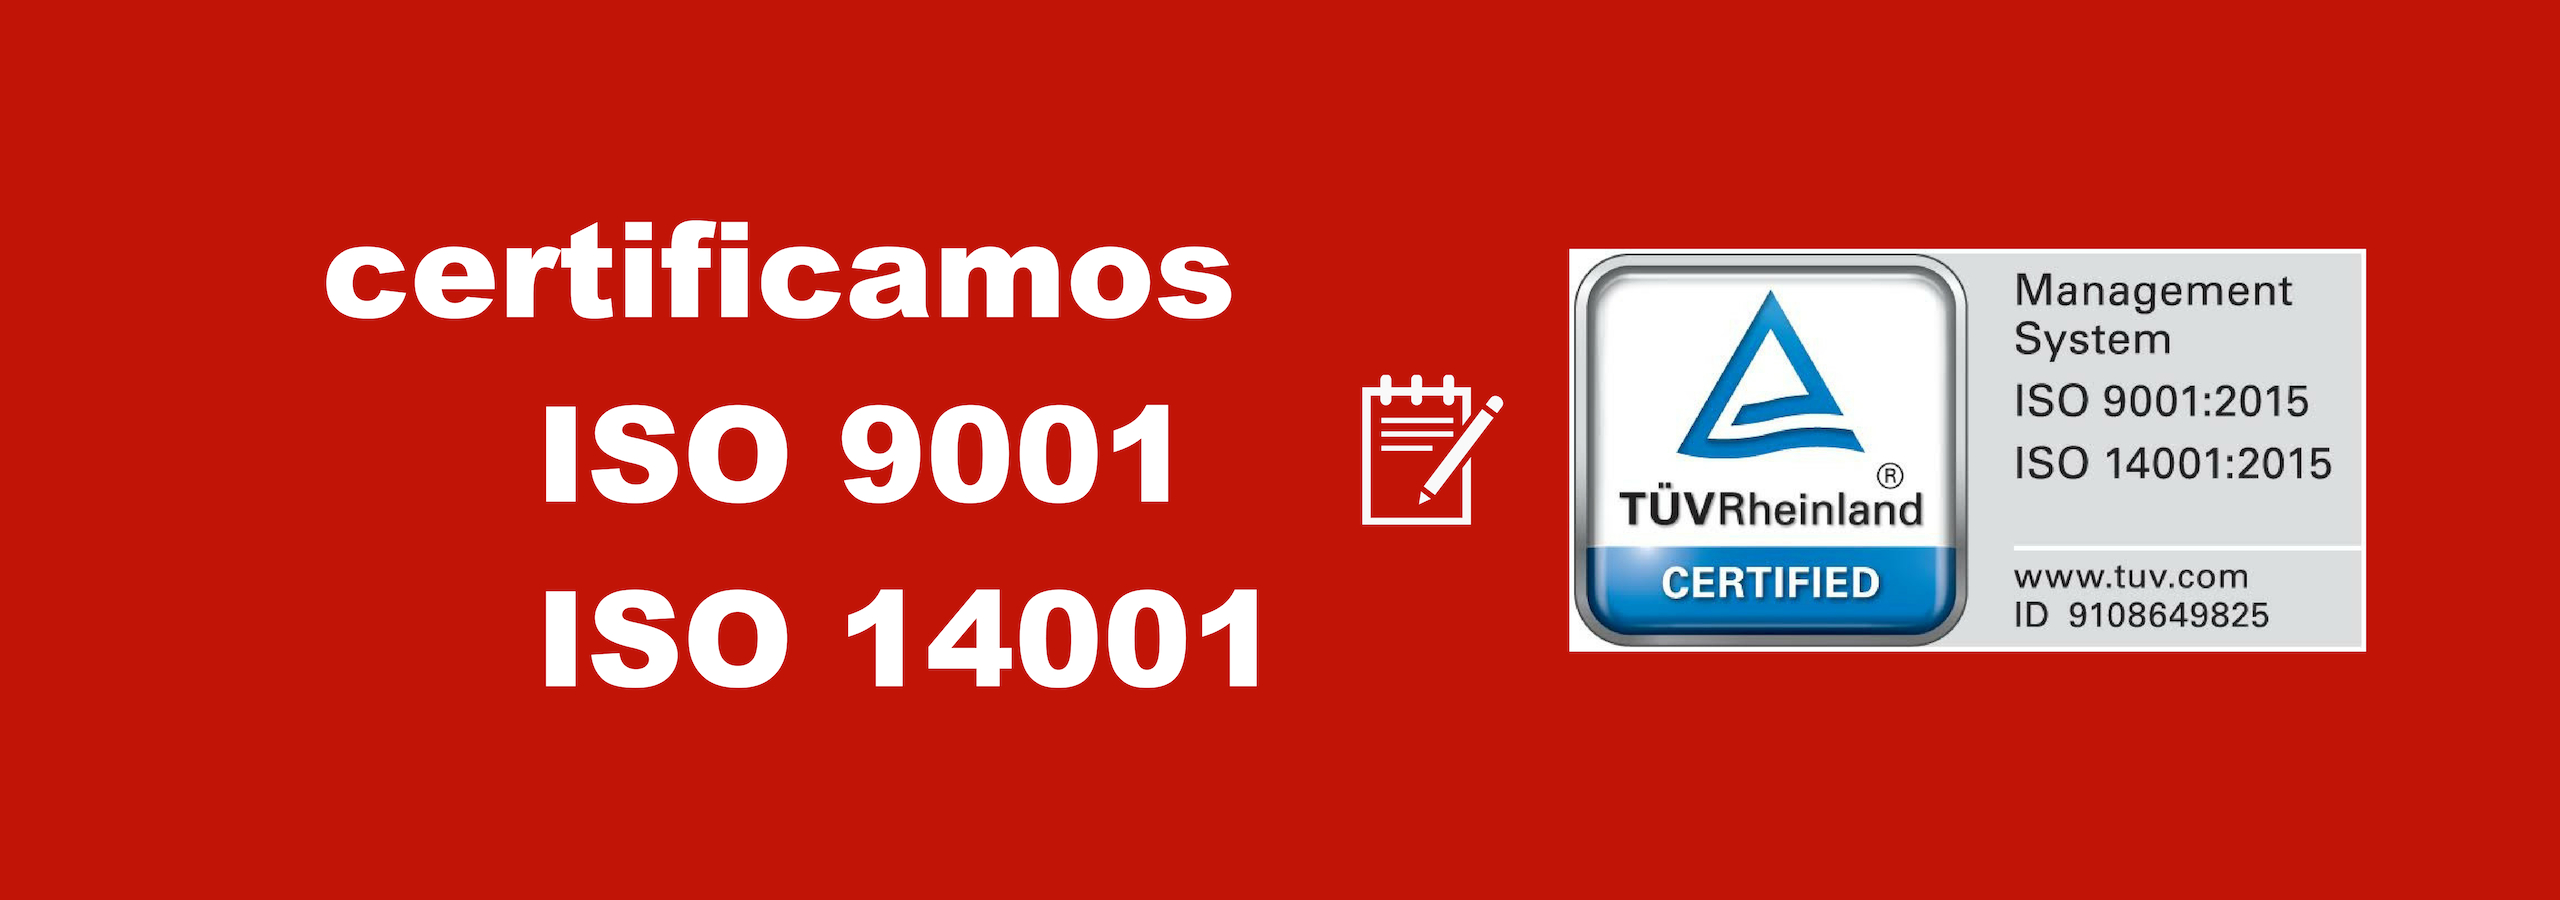 Certificamos ISO 9001 e ISO 14001